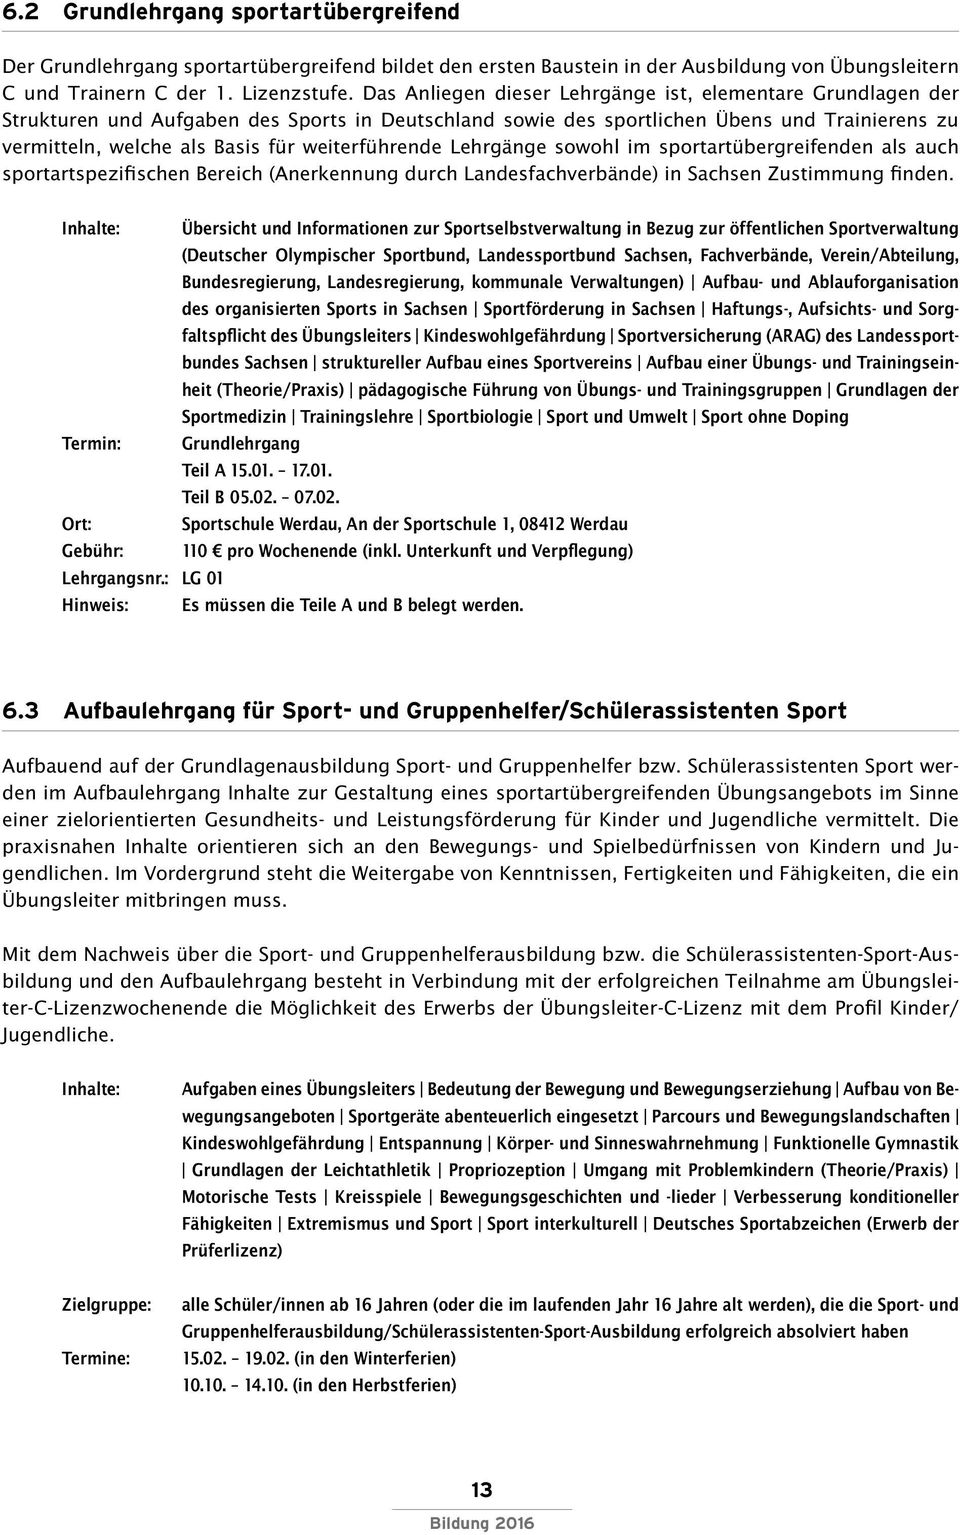 weiterführende Lehrgänge sowohl im sportartübergreifenden als auch sportartspezifischen Bereich (Anerkennung durch Landesfachverbände) in Sachsen Zustimmung finden.